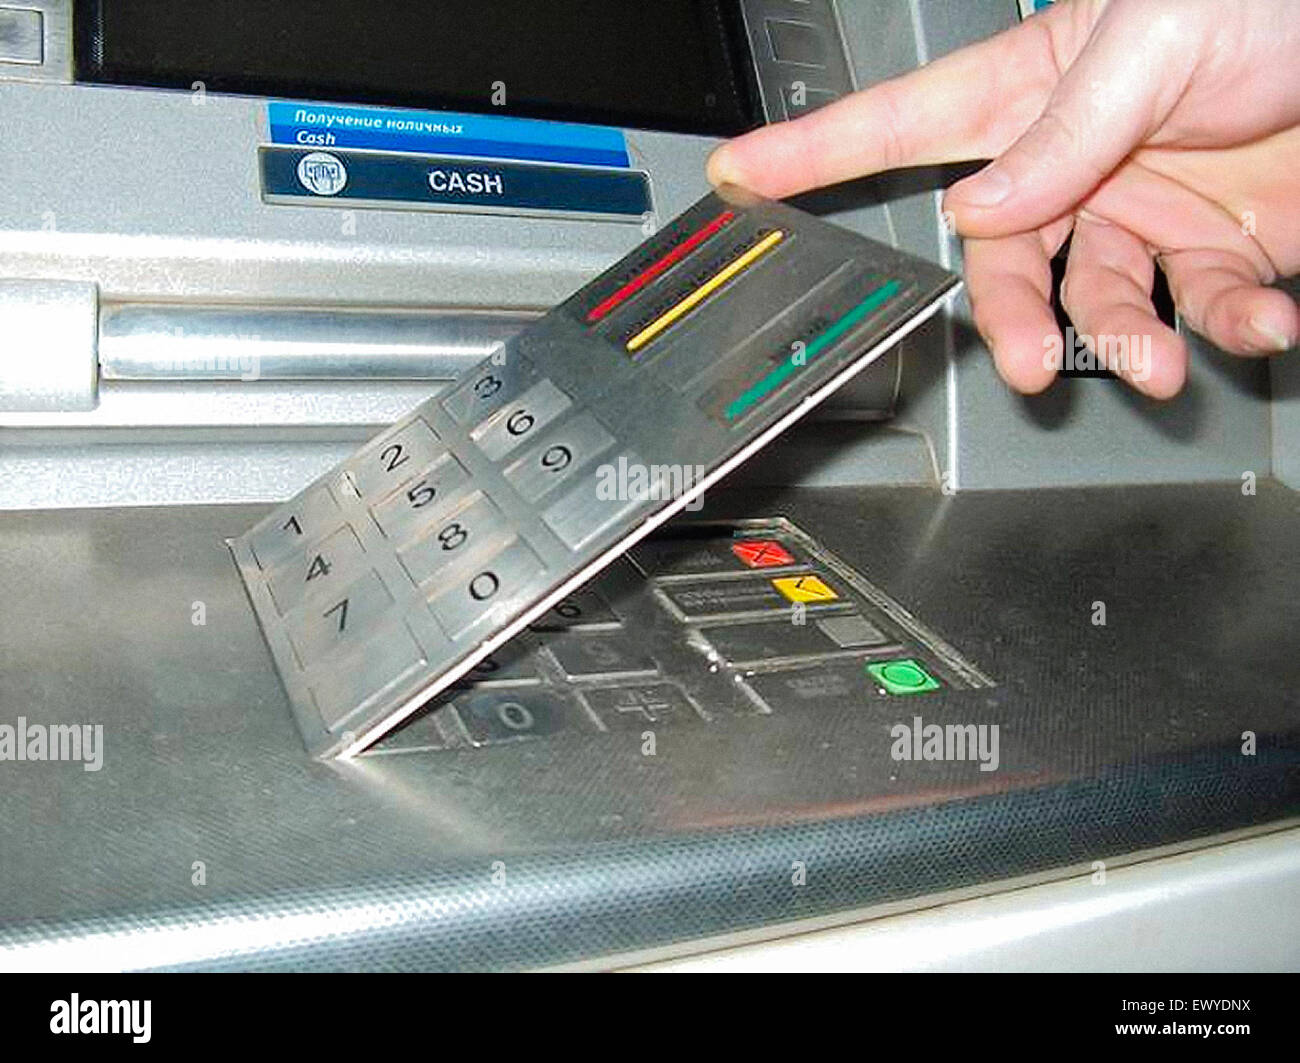 Falsche Tastatur overlay auf Geldautomaten (ATM) für skimming Karte  verwendet, Daten auf Magnetstreifen einer Kreditkarte oder EC-Karte werden  durch ein Gerät mit den Schlitz und die PIN-Nummer durch eine falsche  Tastatur oder